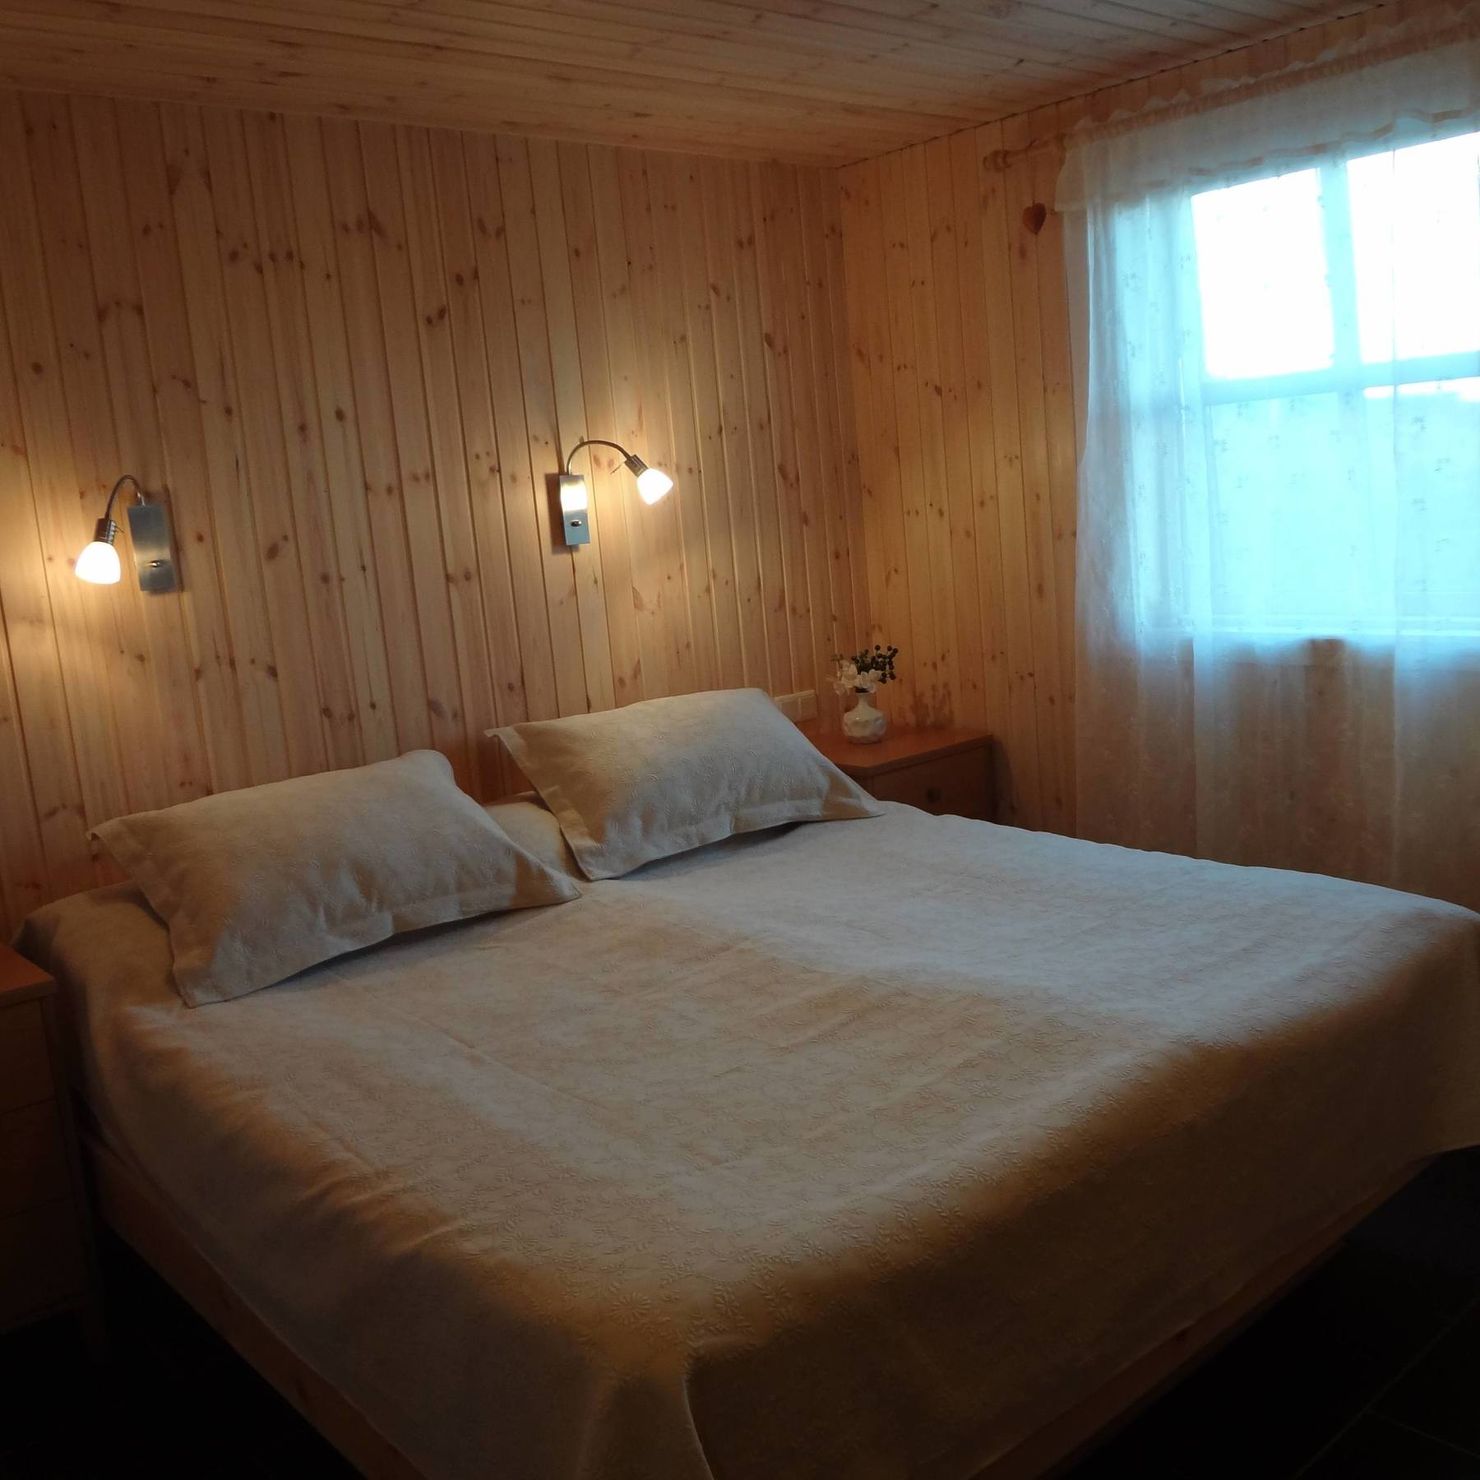 Ein großes Schlafzimmer mit Fenster, Leselampen und gemütlichem Doppelbett